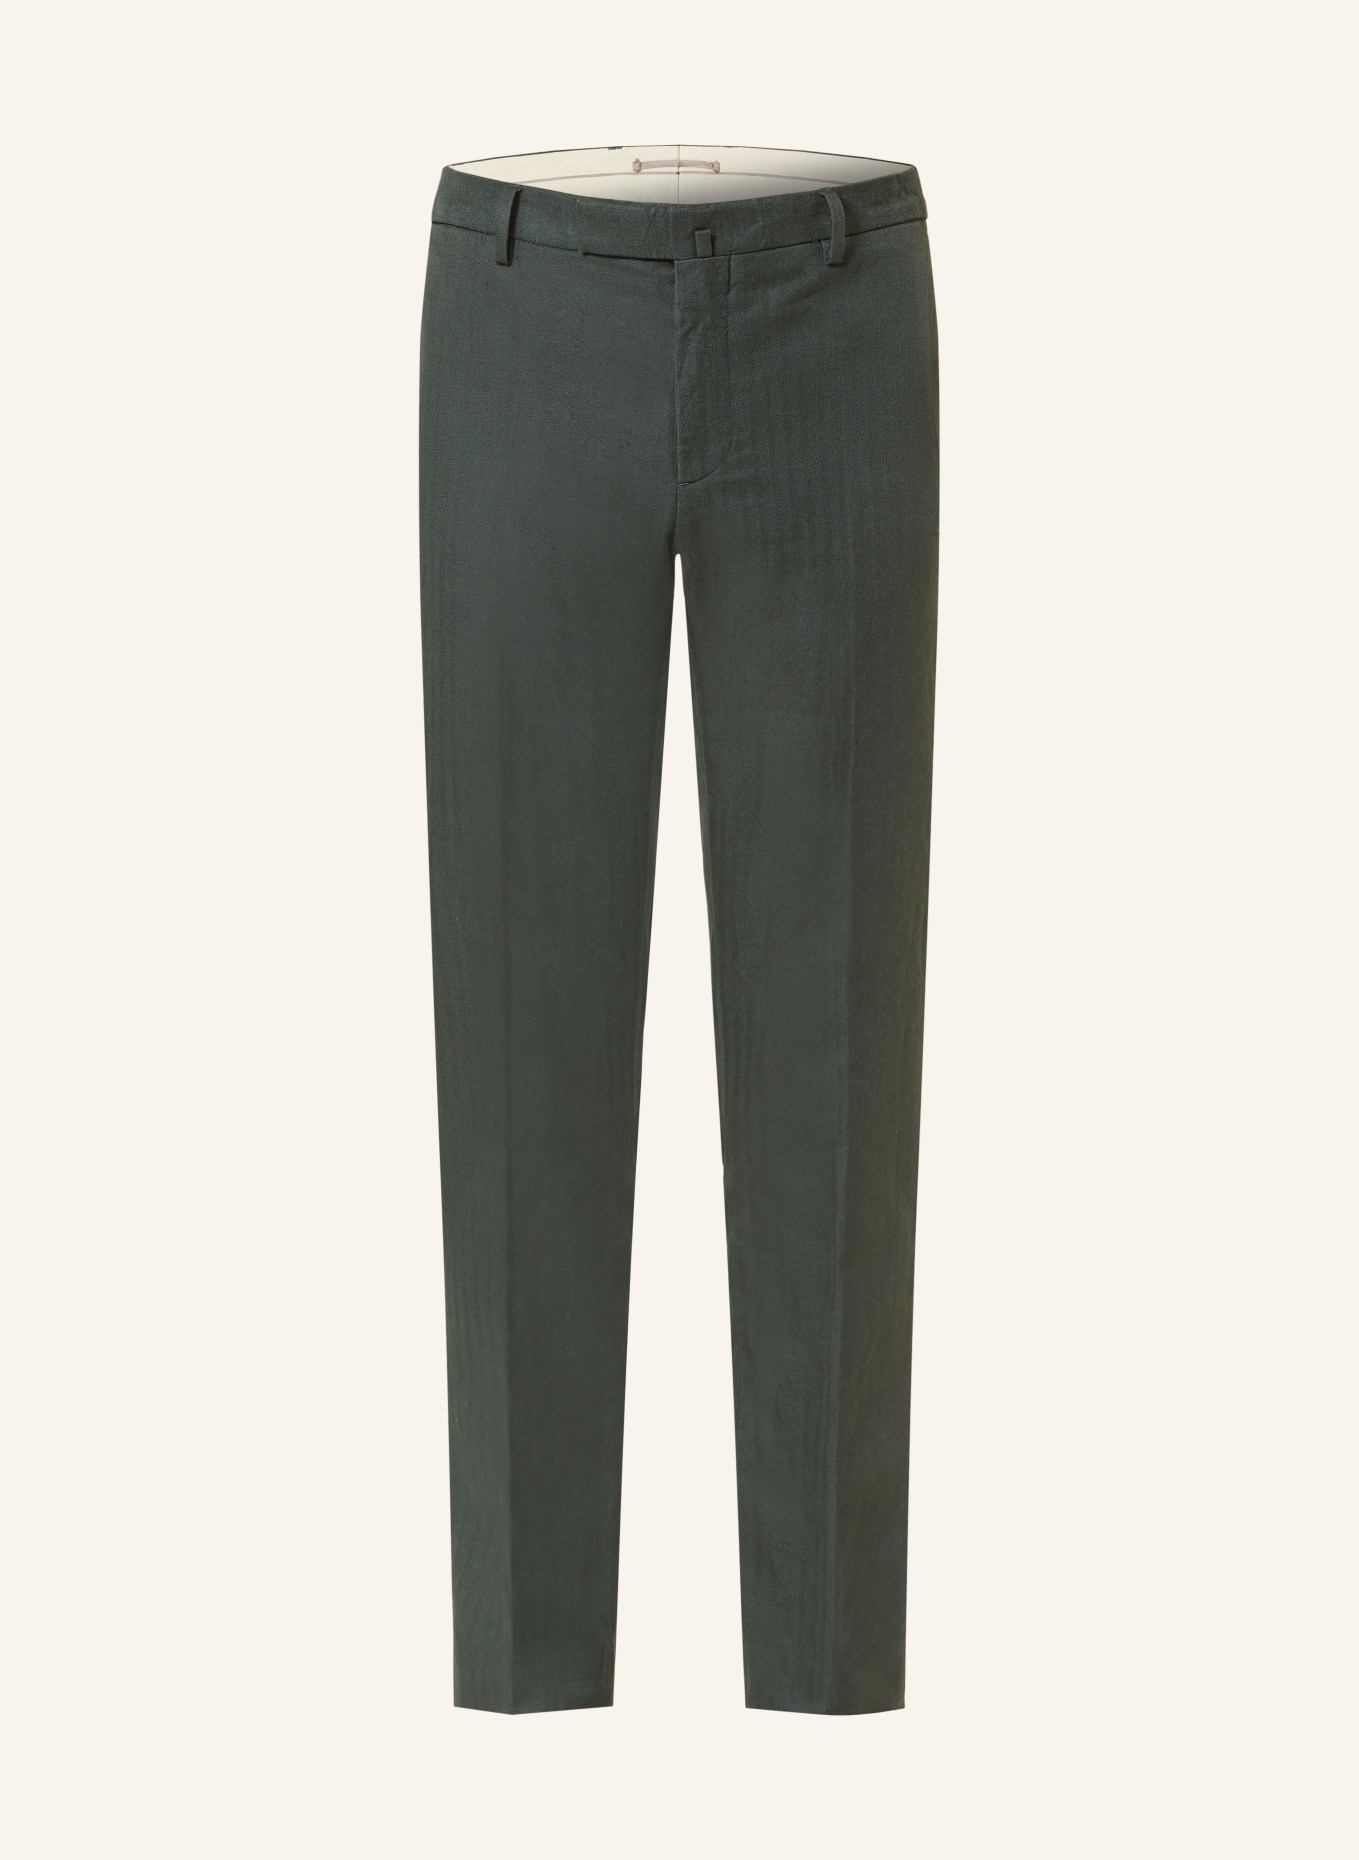 HACKETT LONDON Anzughose Slim Fit mit Leinen, Farbe: 670 BOTTLE GREEN (Bild 1)